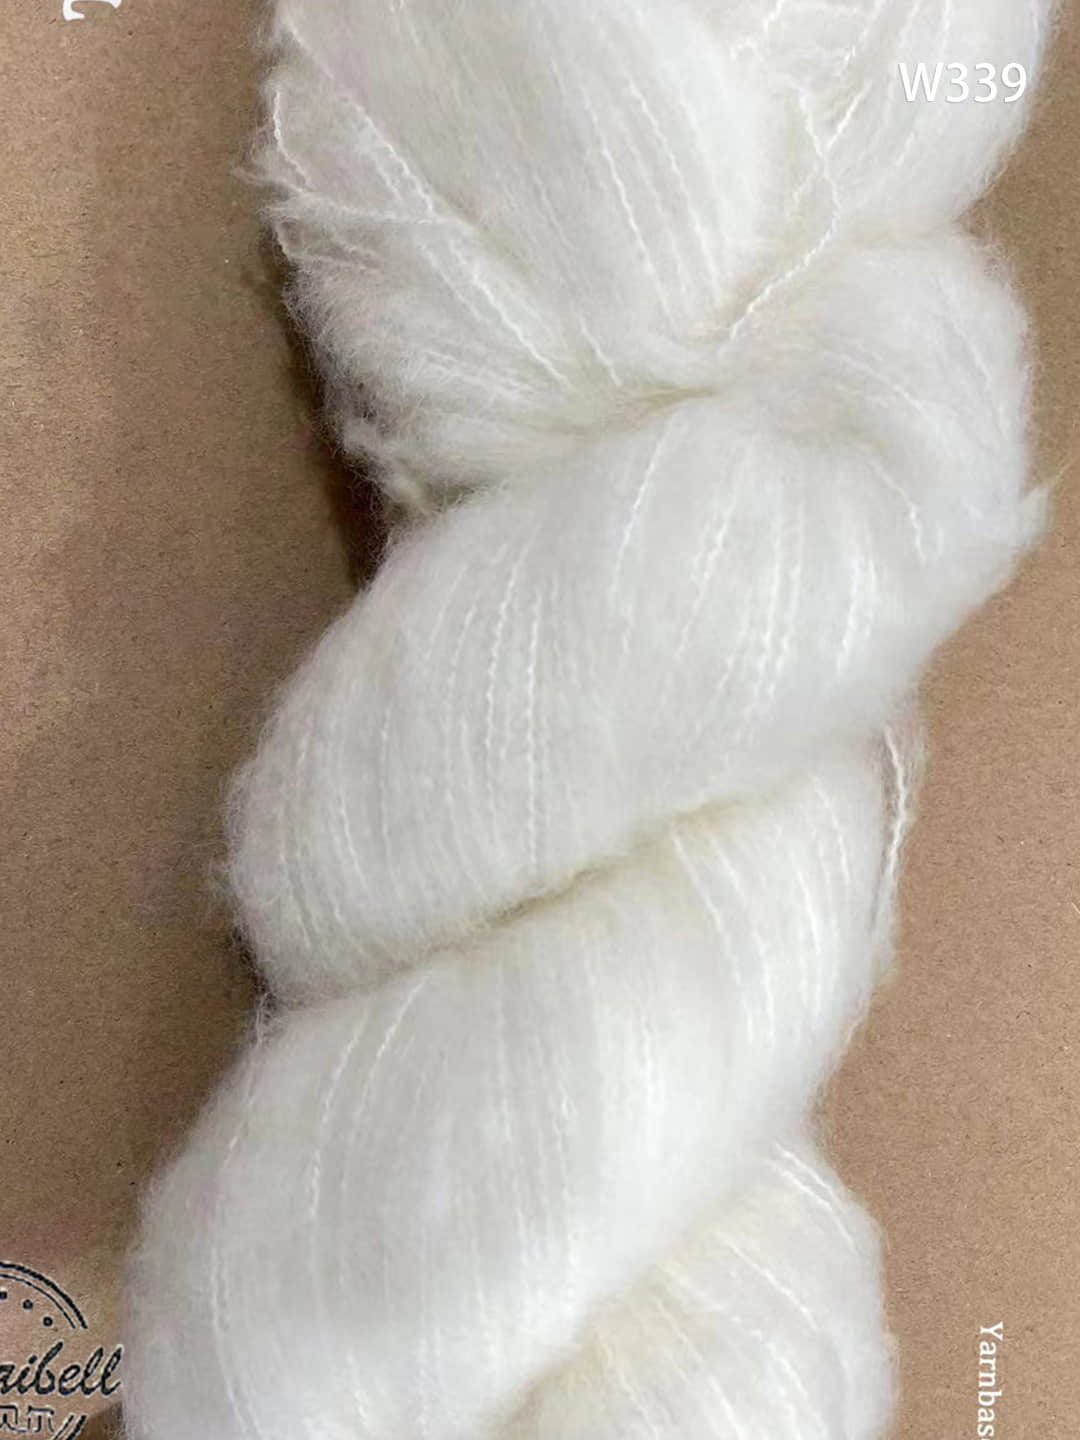 fluffy yarn W339 350m/100g.